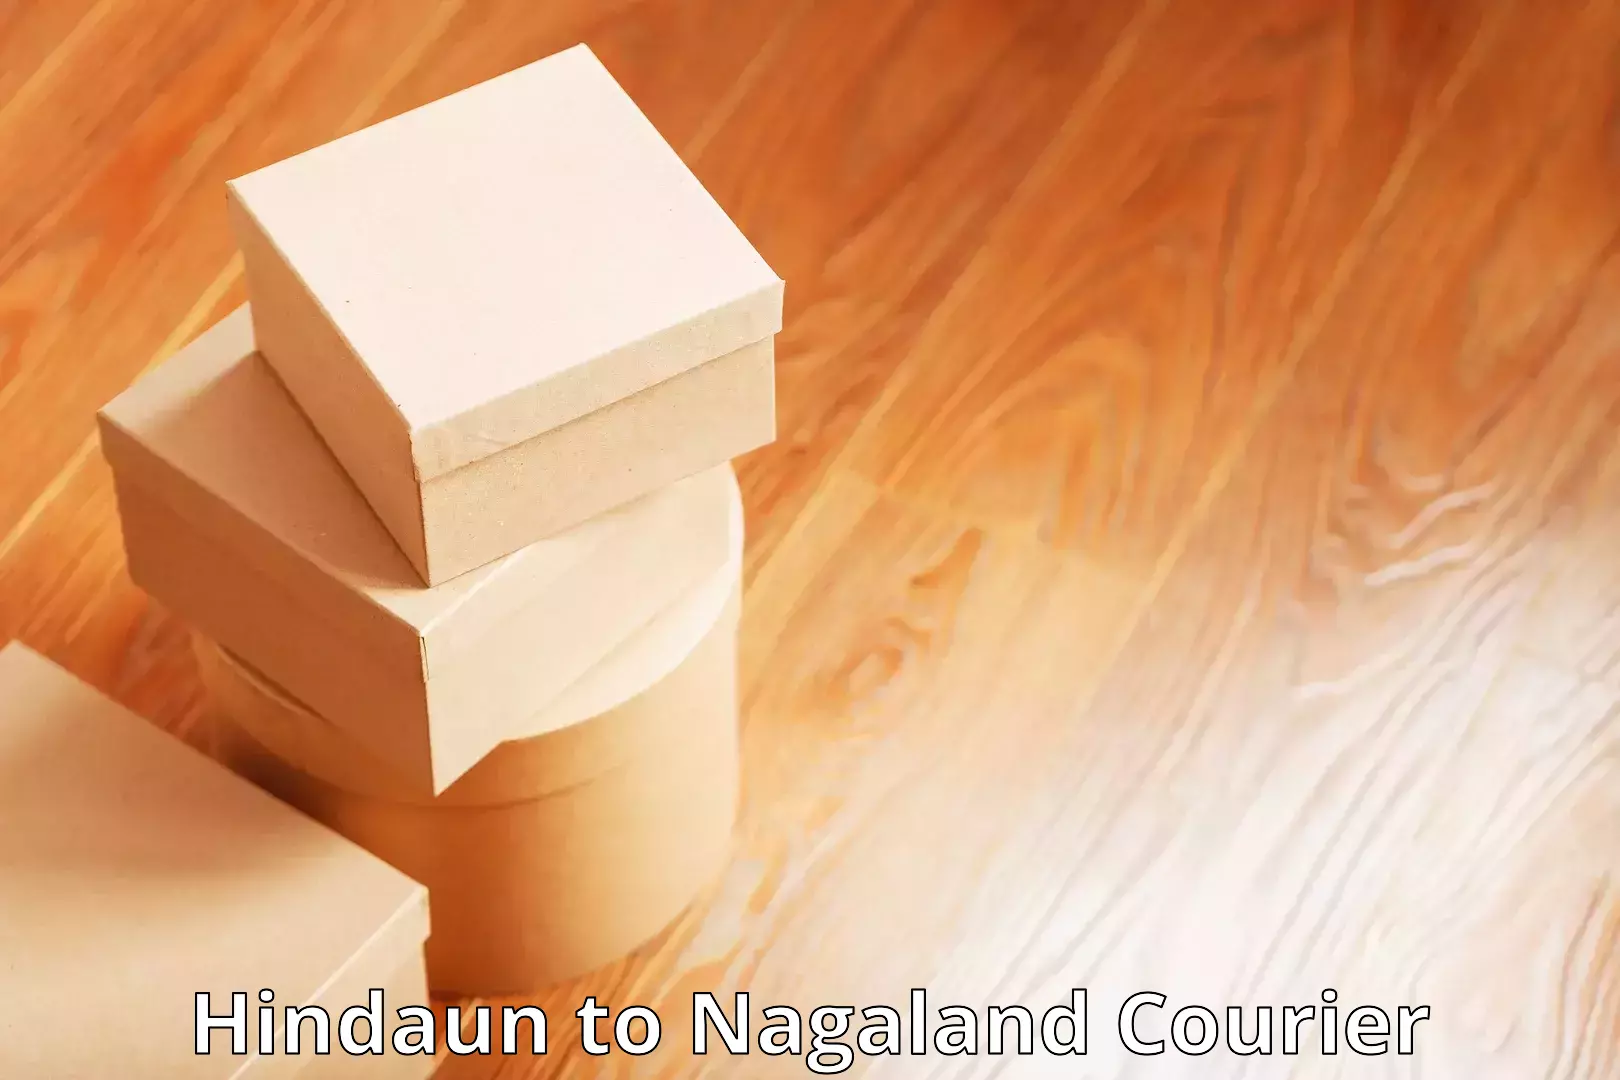 Lightweight parcel options Hindaun to Nagaland